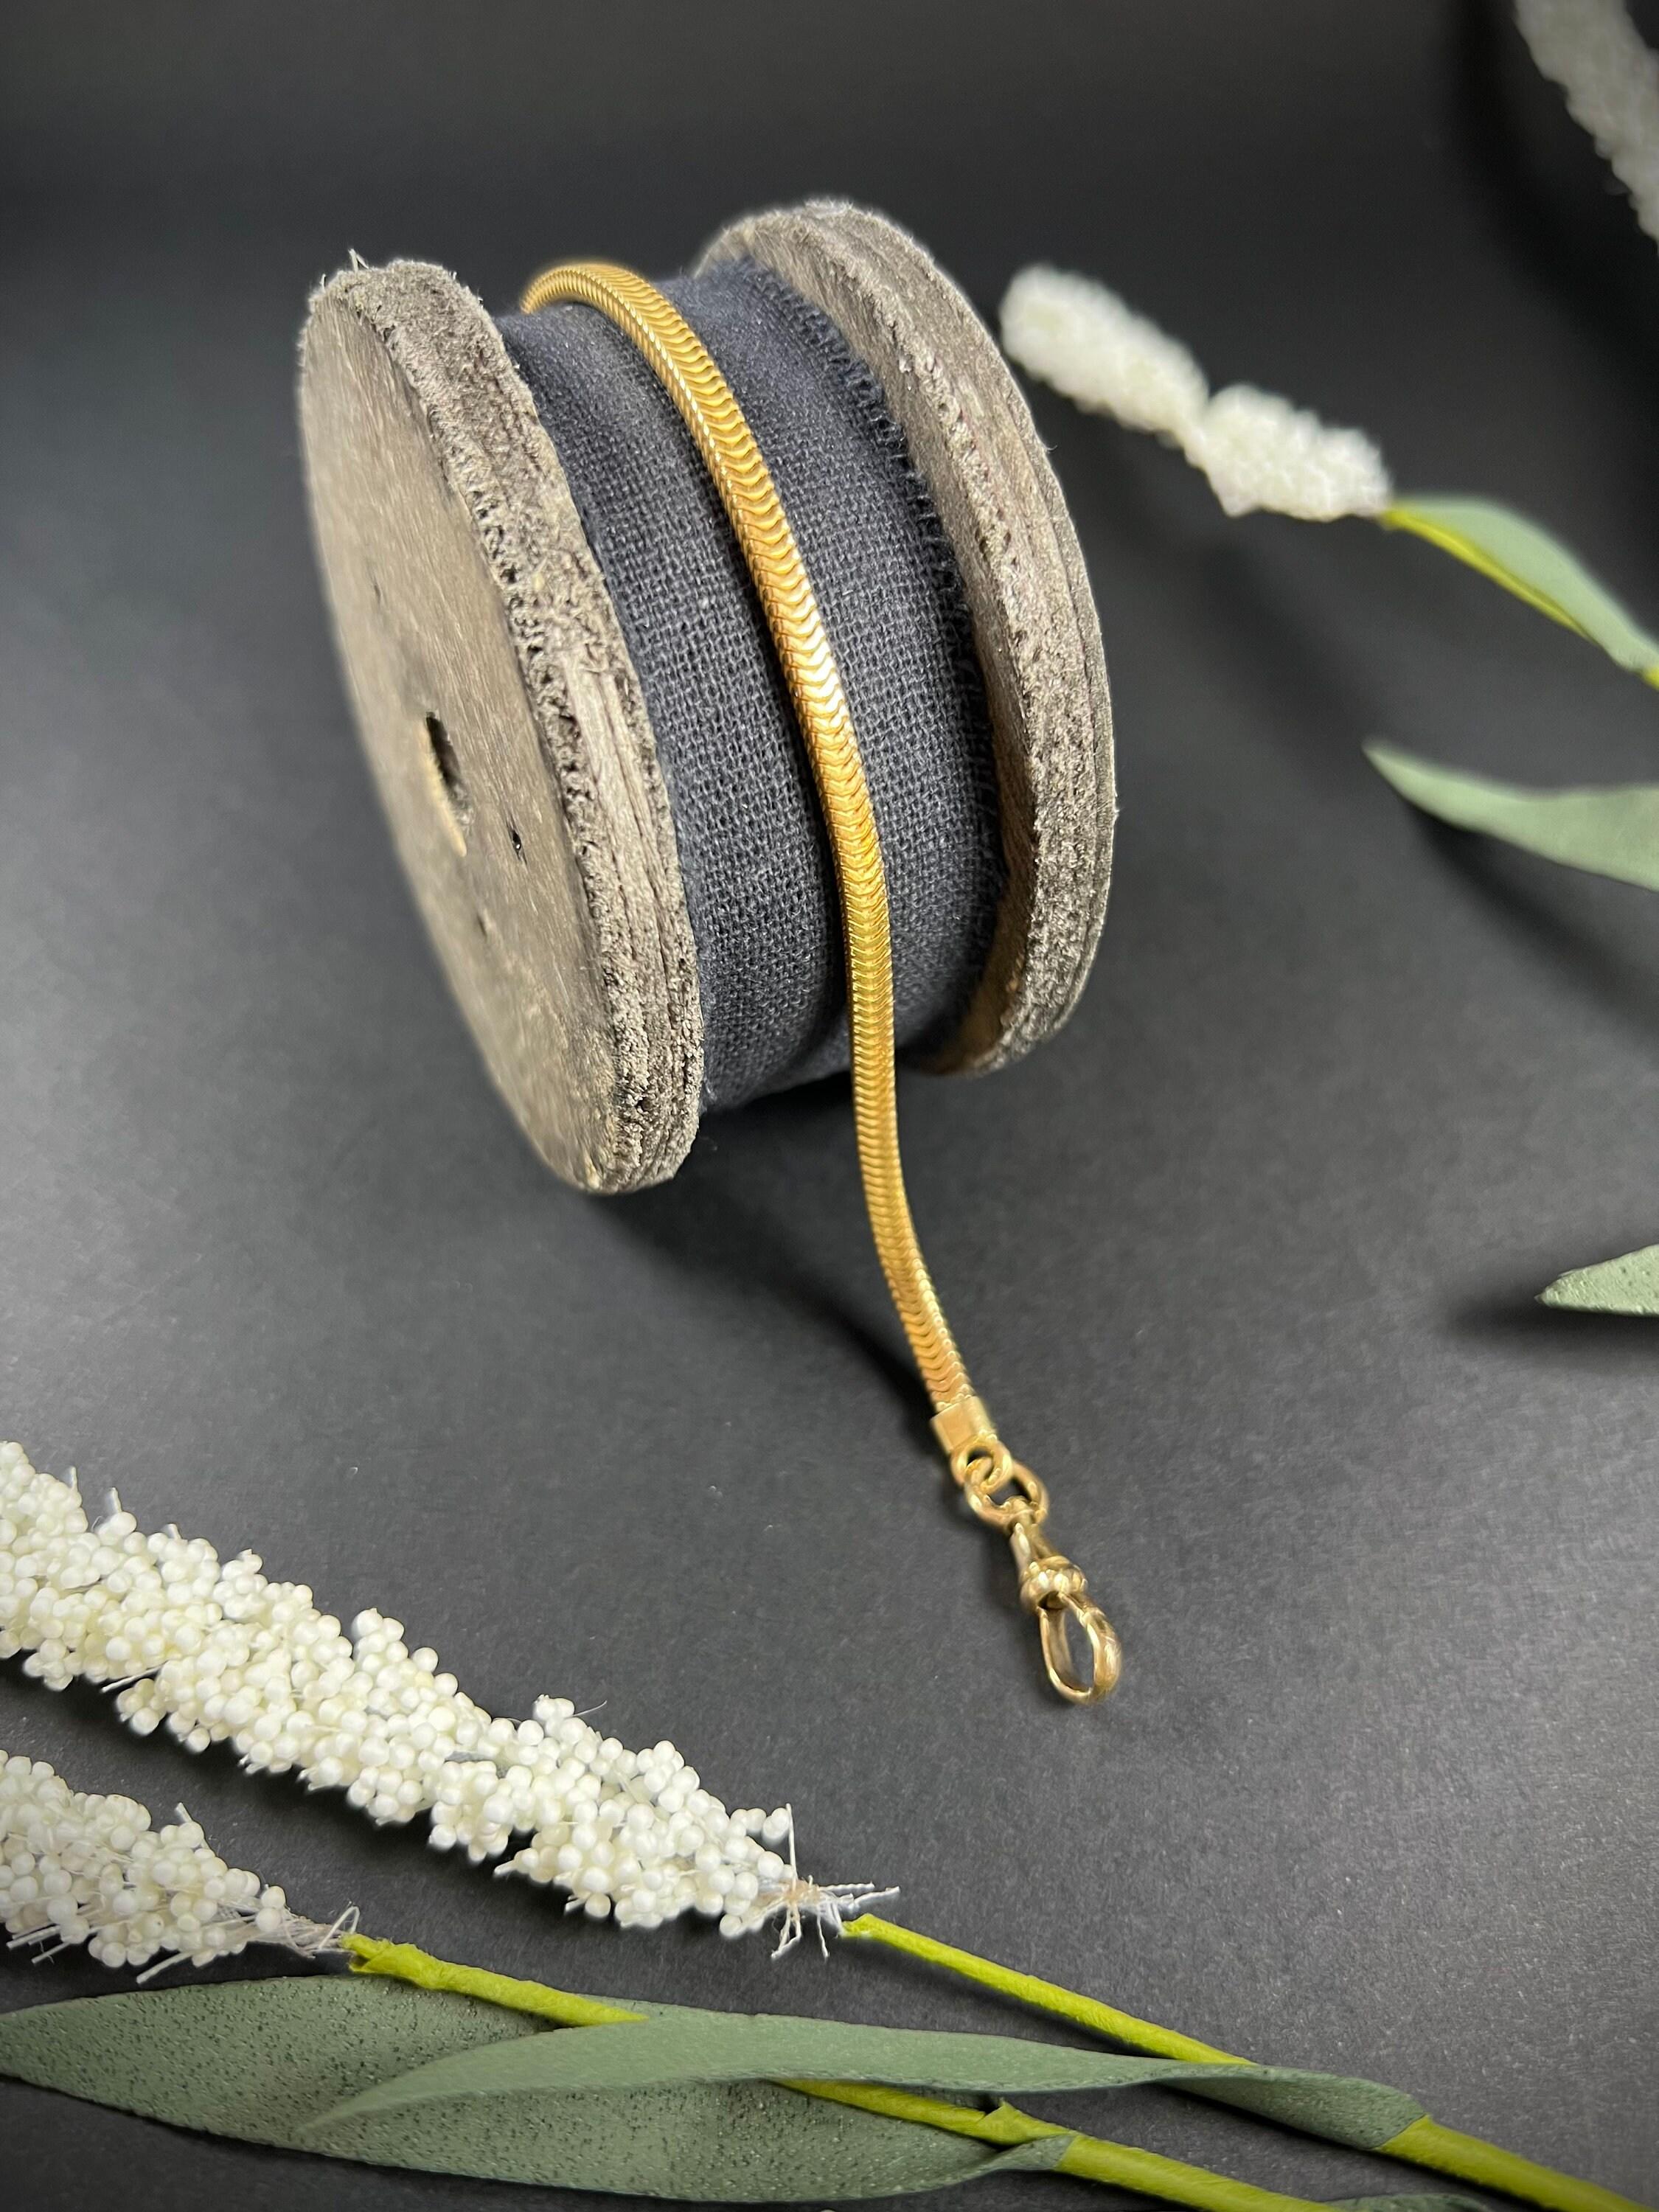 Bracelet serpent ancien 

Or 18 carats 

Circa 1900

Joli bracelet en or jaune français avec de beaux maillons en forme de serpent. Il s'adapte parfaitement au poignet et s'enroule comme un serpent. 

Le fermoir est pivotant. 

Longueur approx. 8